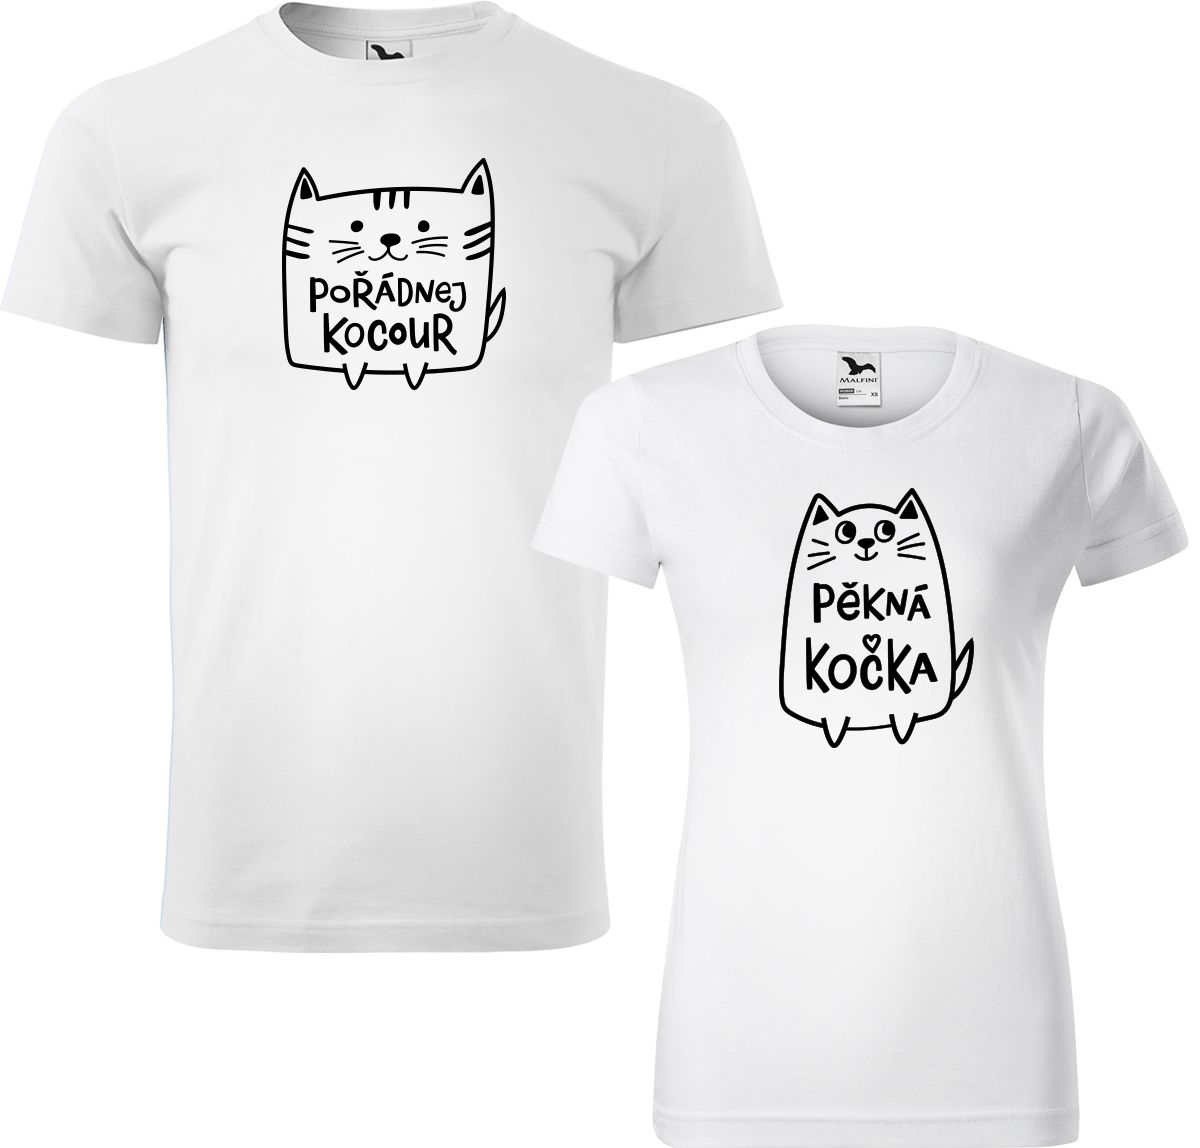 Trička pro páry - Pořádnej kocour a pěkná kočka Barva: Bílá (00), Velikost dámské tričko: S, Velikost pánské tričko: 4XL